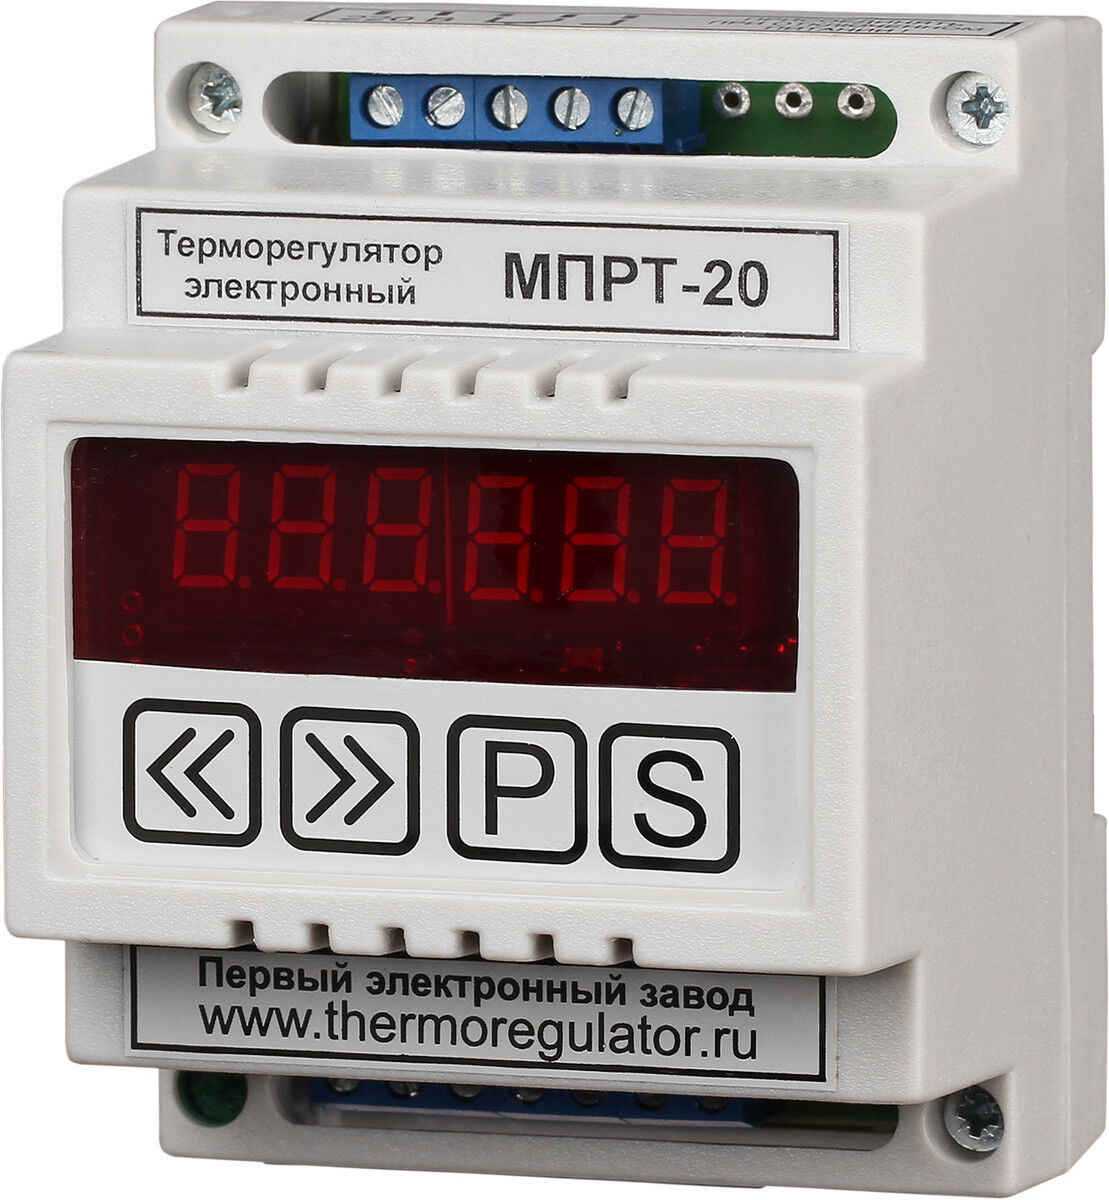 Терморегулятор МПРТ-20 с датчиками KTY-81-110 цифровое управление DIN ПЭЛЗ